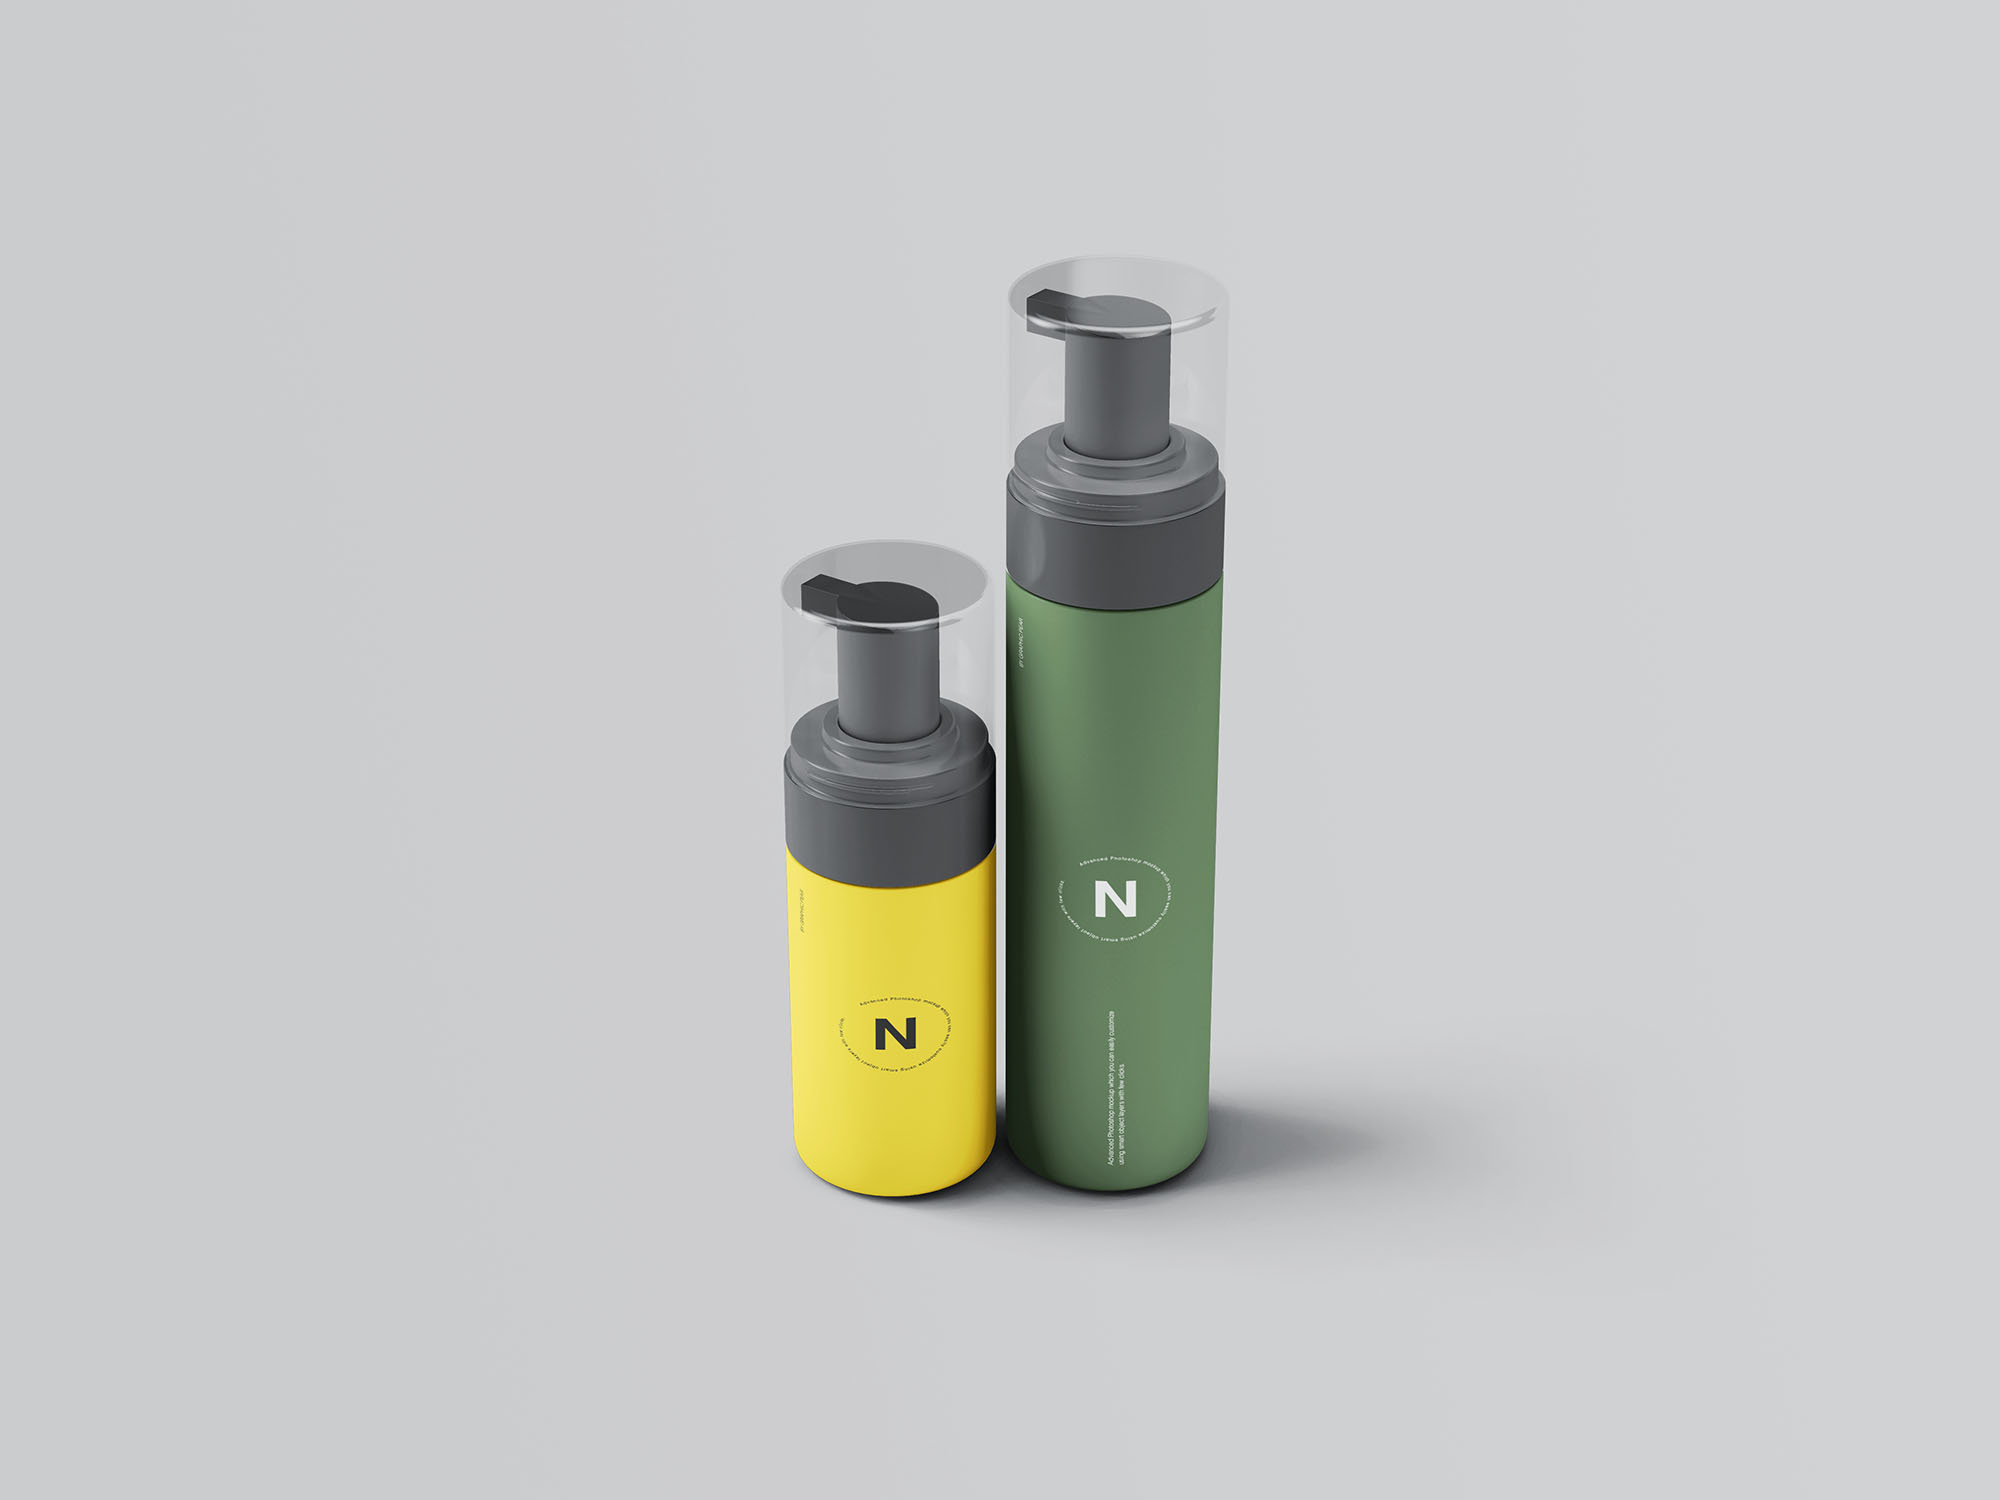 按压式化妆品护肤品瓶外观设计第一素材精选模板 Cosmetic Bottles Packaging Mockup插图(5)